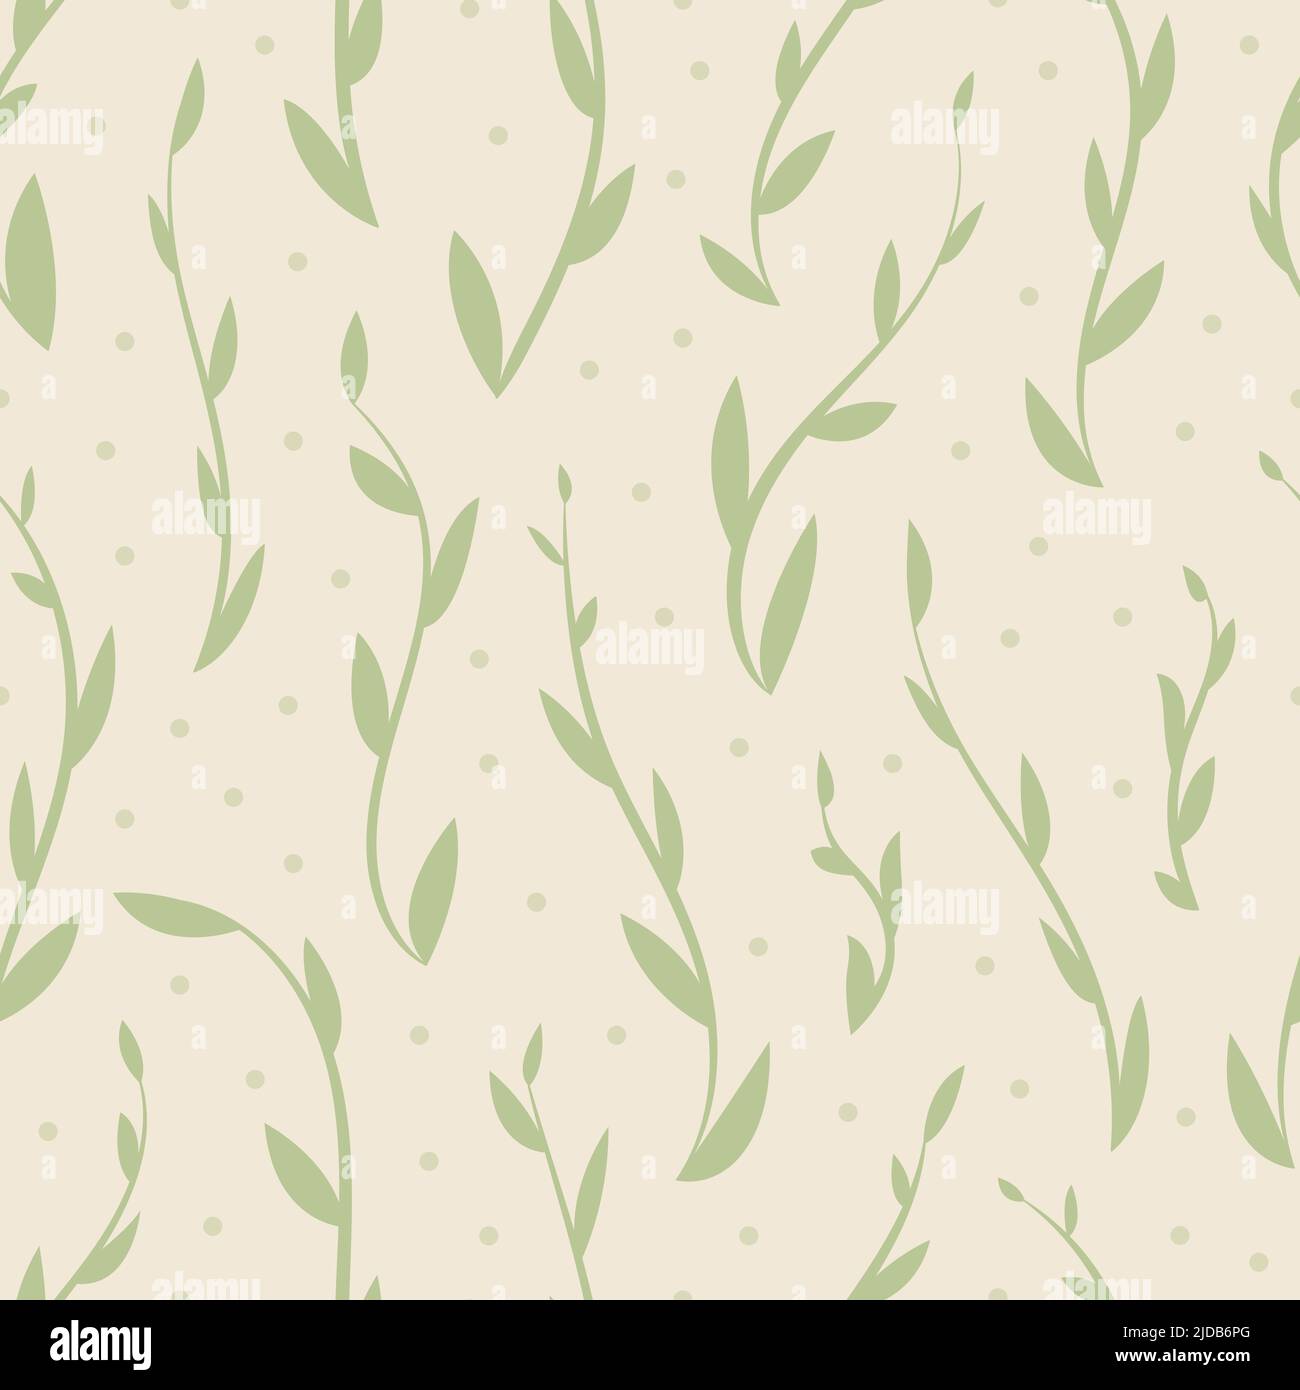 Skurrile, fließende Blatt nahtlose Vektor-Muster. Weicher grüner botanischer Druck auf natürlichem Hintergrund. Wiederholen Hintergrund Tapete Design. Stock Vektor